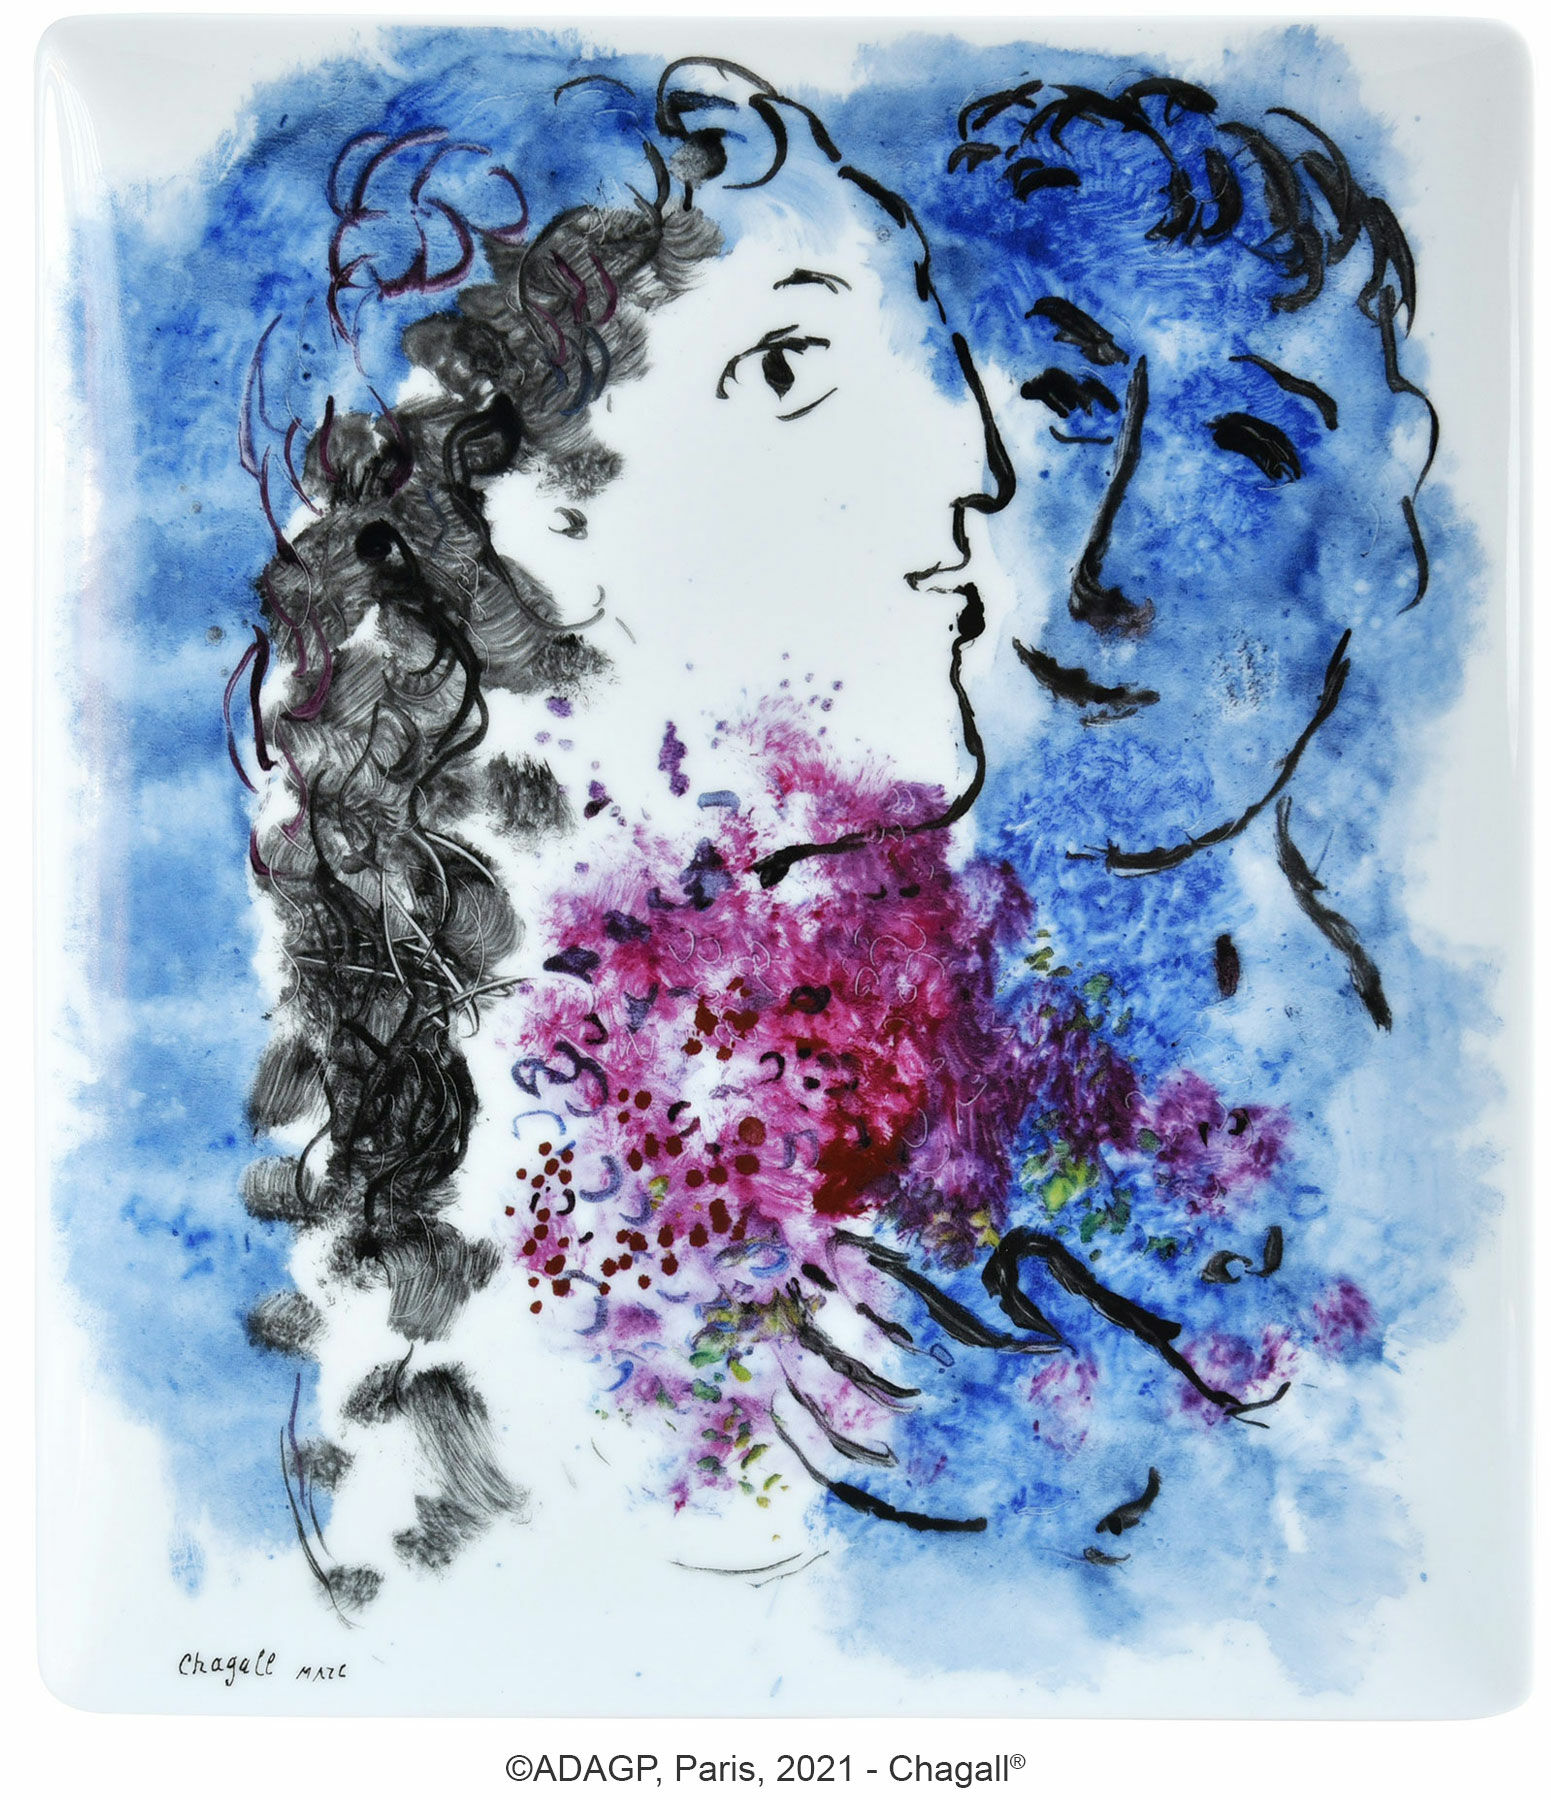 Collection "Les Bouquets de fleurs" by Bernardaud - bowl / platter, porcelain by Marc Chagall